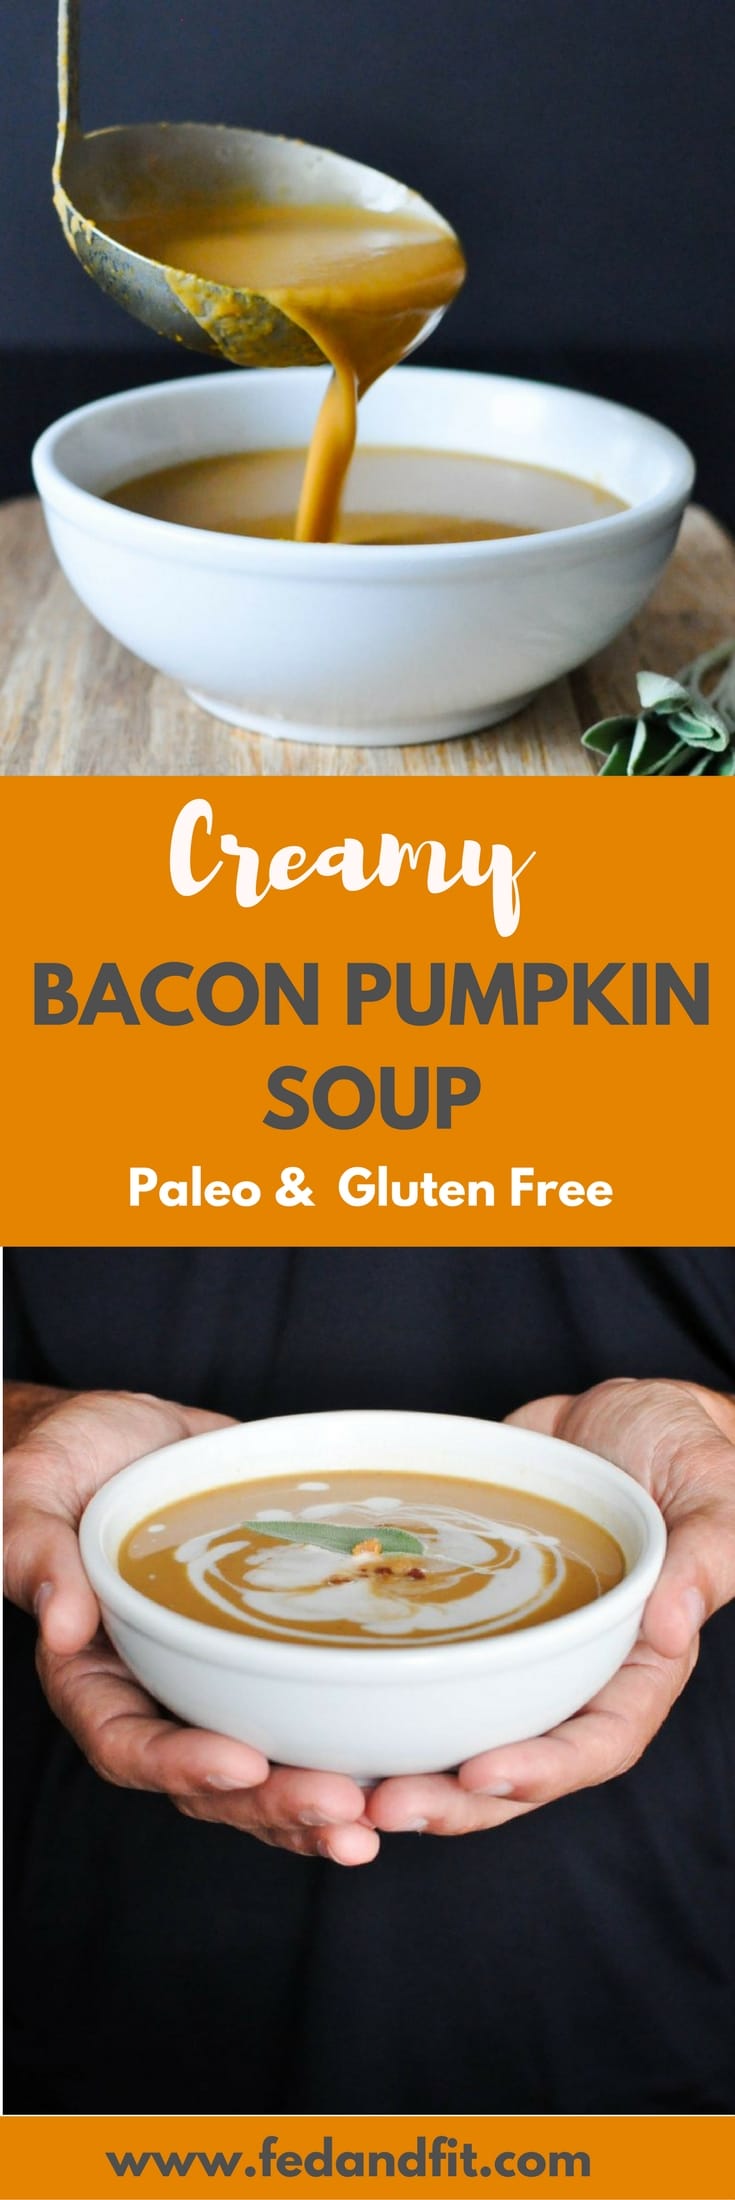 ta zupa dyniowa Paleo Bacon jest całkowicie bezmleczna i kremowa z mlekiem kokosowym. Jest to idealny zdrowy i pocieszający zimowy posiłek, który nadal czuje się pobłażliwy!